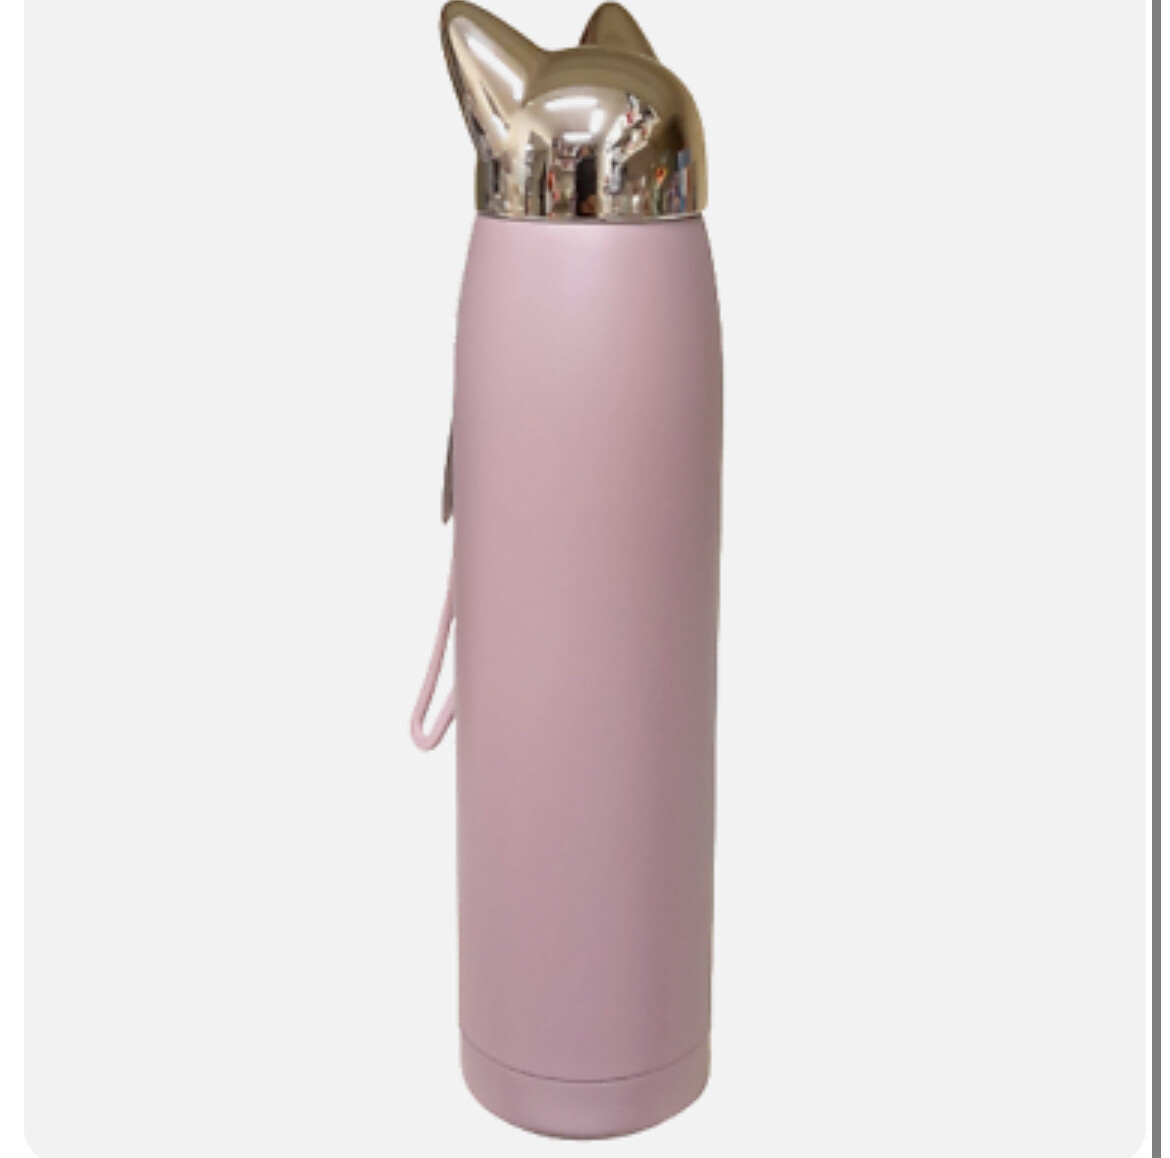 Bottiglia termica gatto rosa